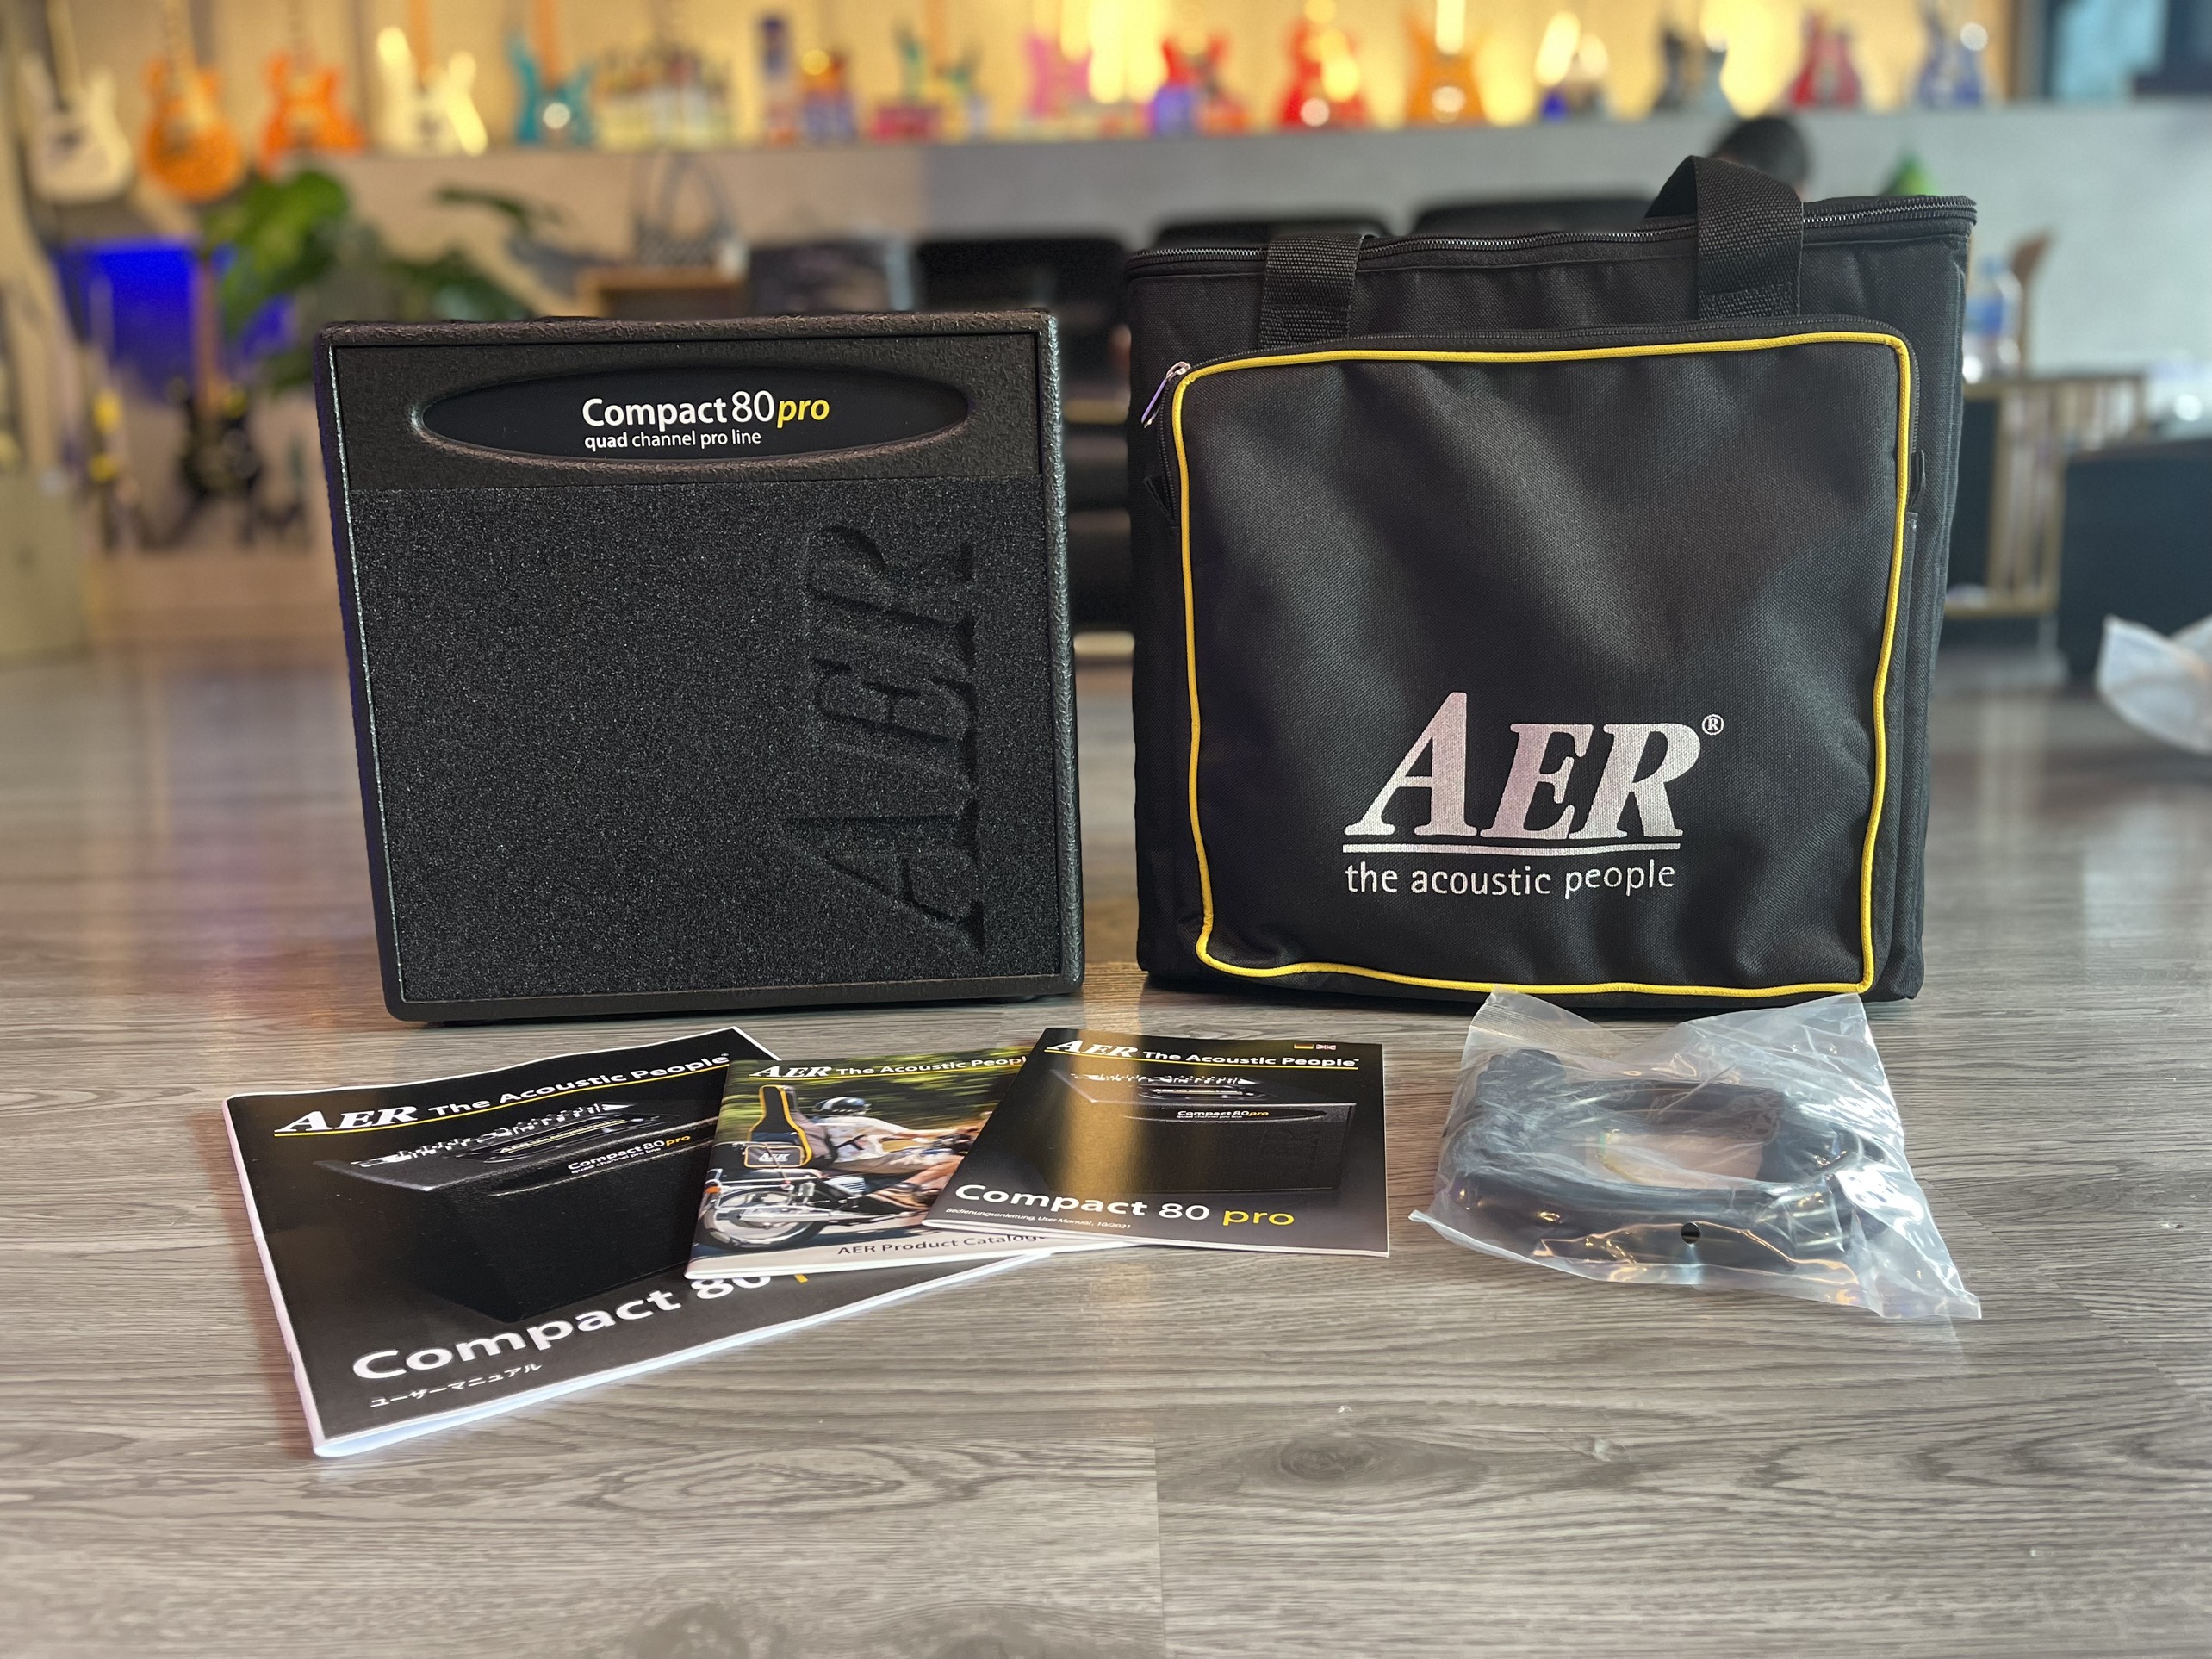 AER Compact 80 Pro Quad Channel Pro Line